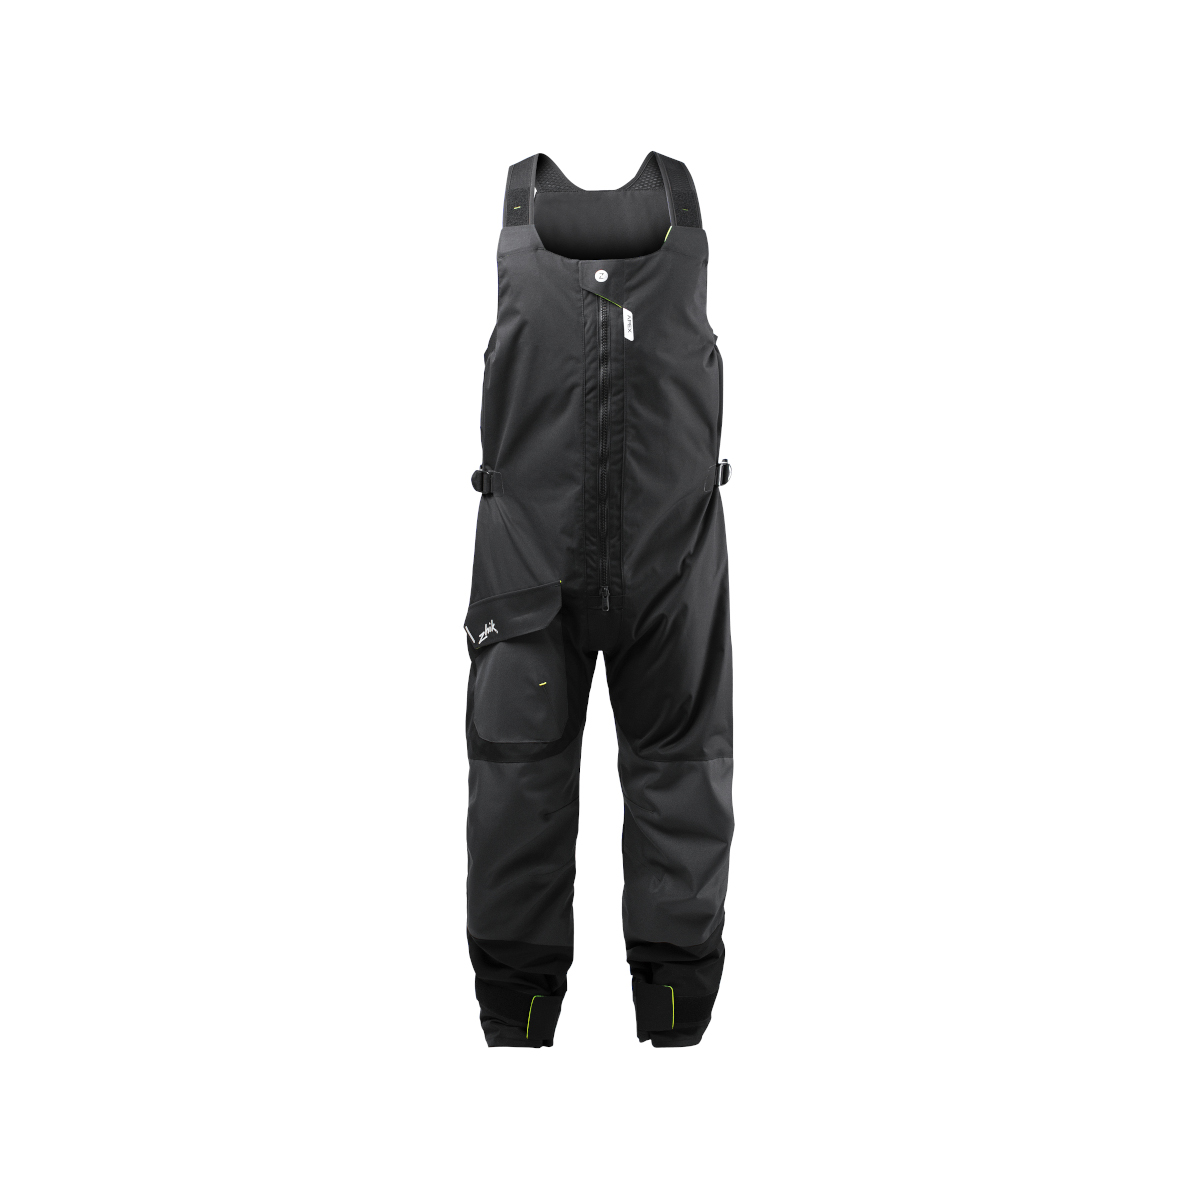 Zhik OFS700 pantalon de voile Coastal unisexe gris foncé, taille L